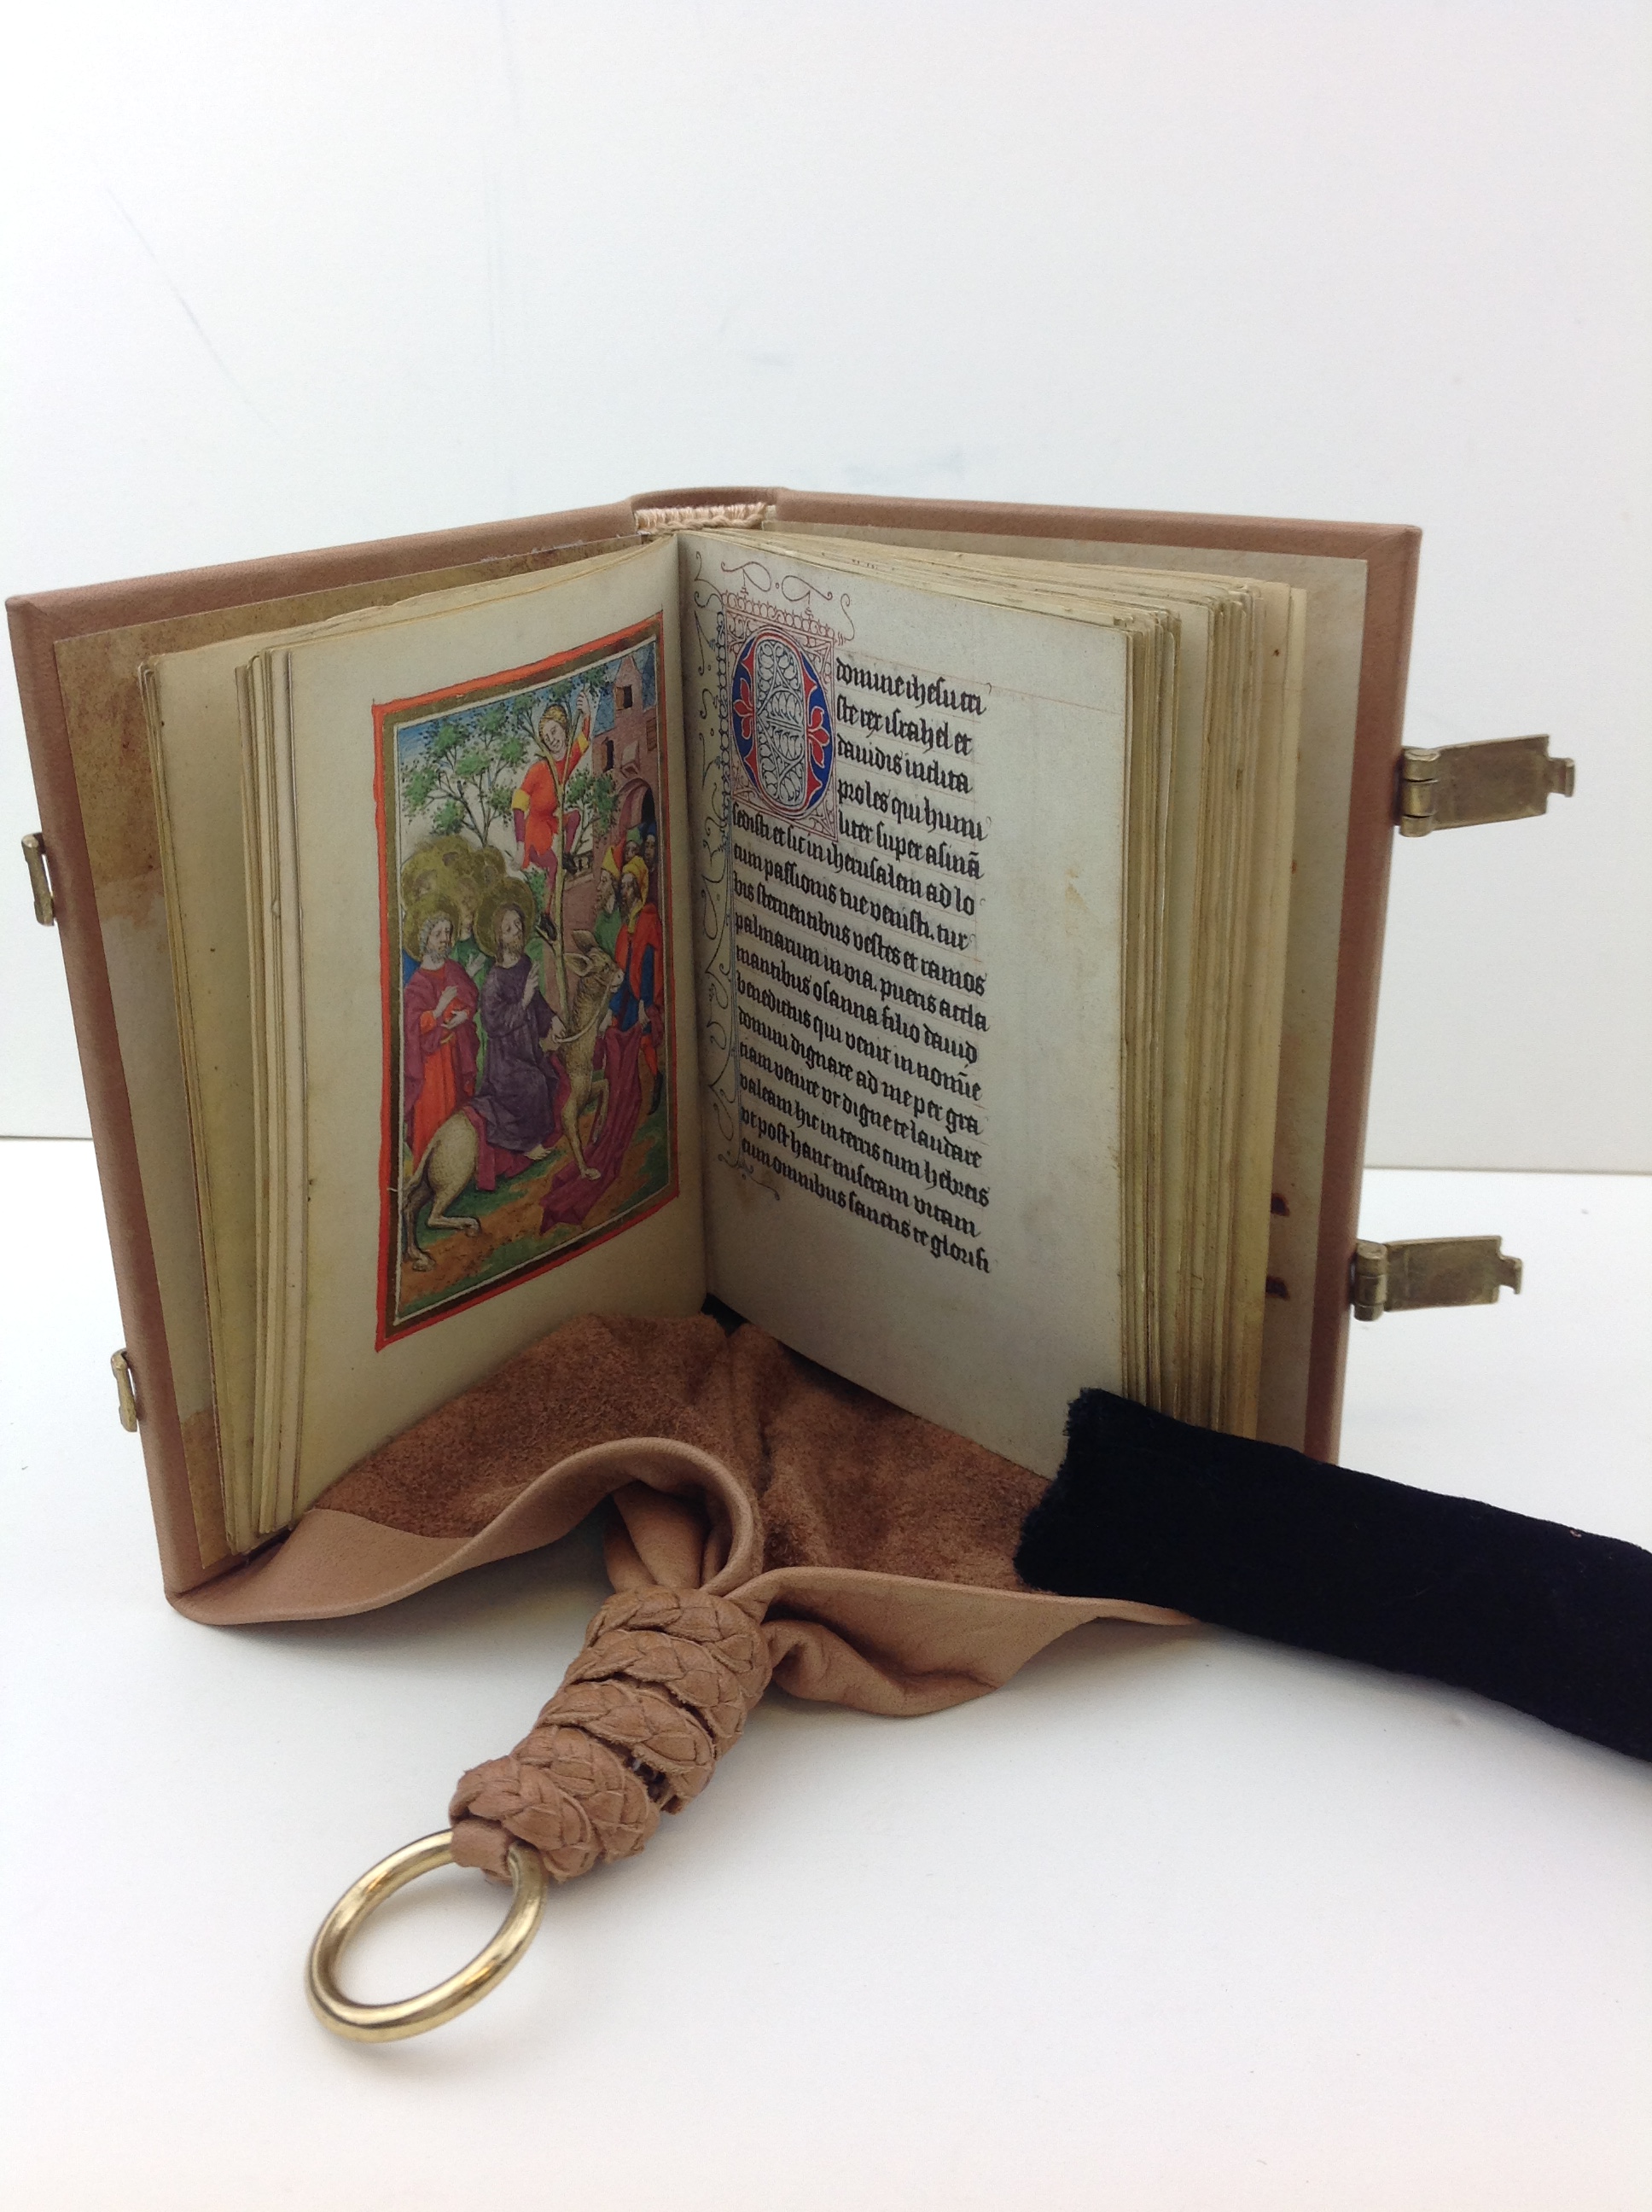 Facsimile of girdle book binding